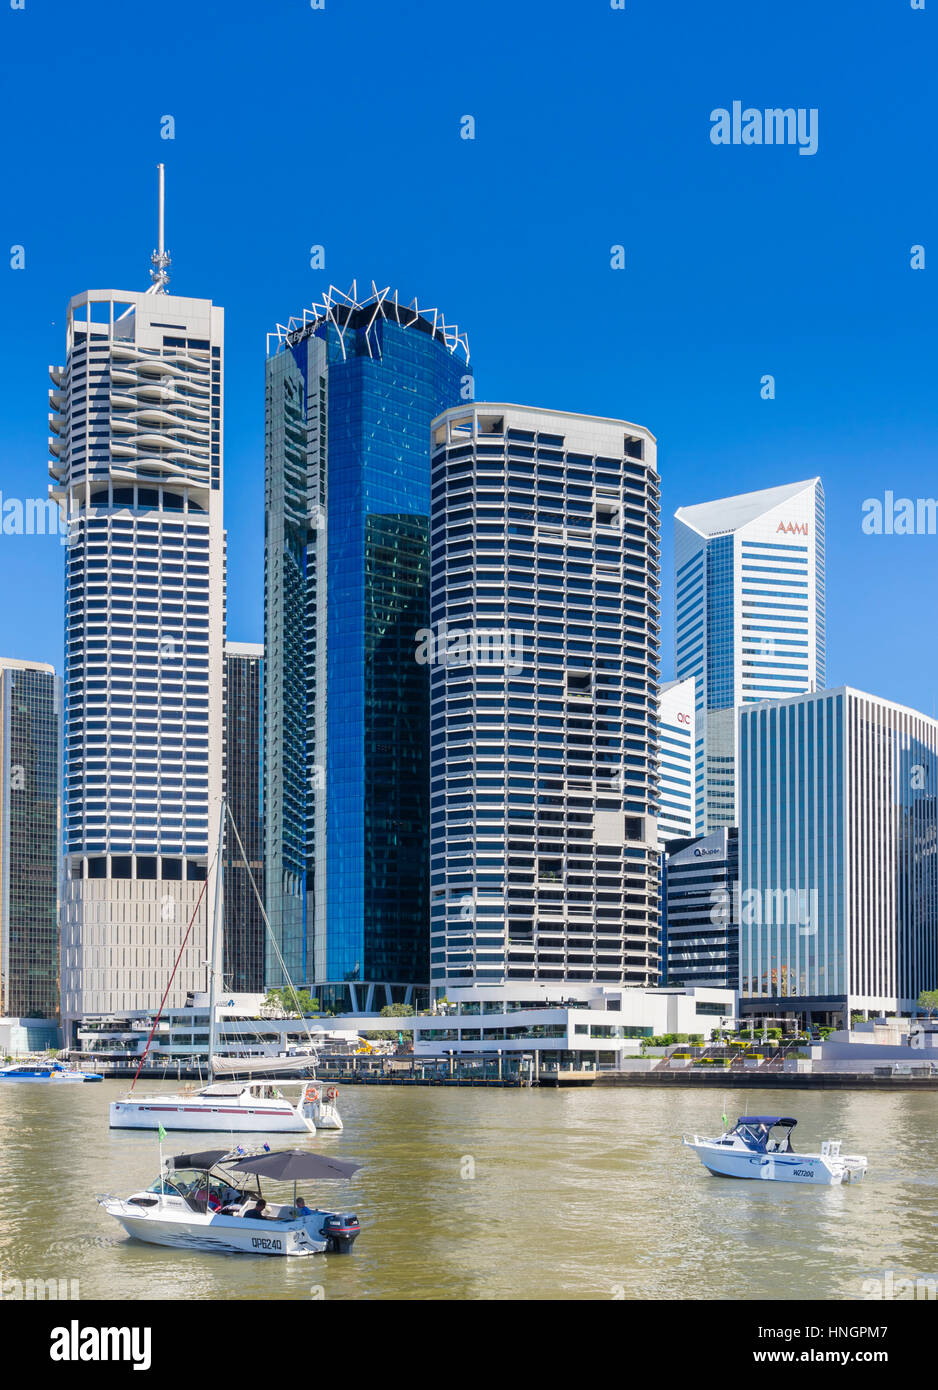 Brisbane, Australien - 24. September 2016: Blick auf die Wolkenkratzer in Brisbane CBD und Menschen Segeln auf Yachten auf dem Brisbane River Stockfoto